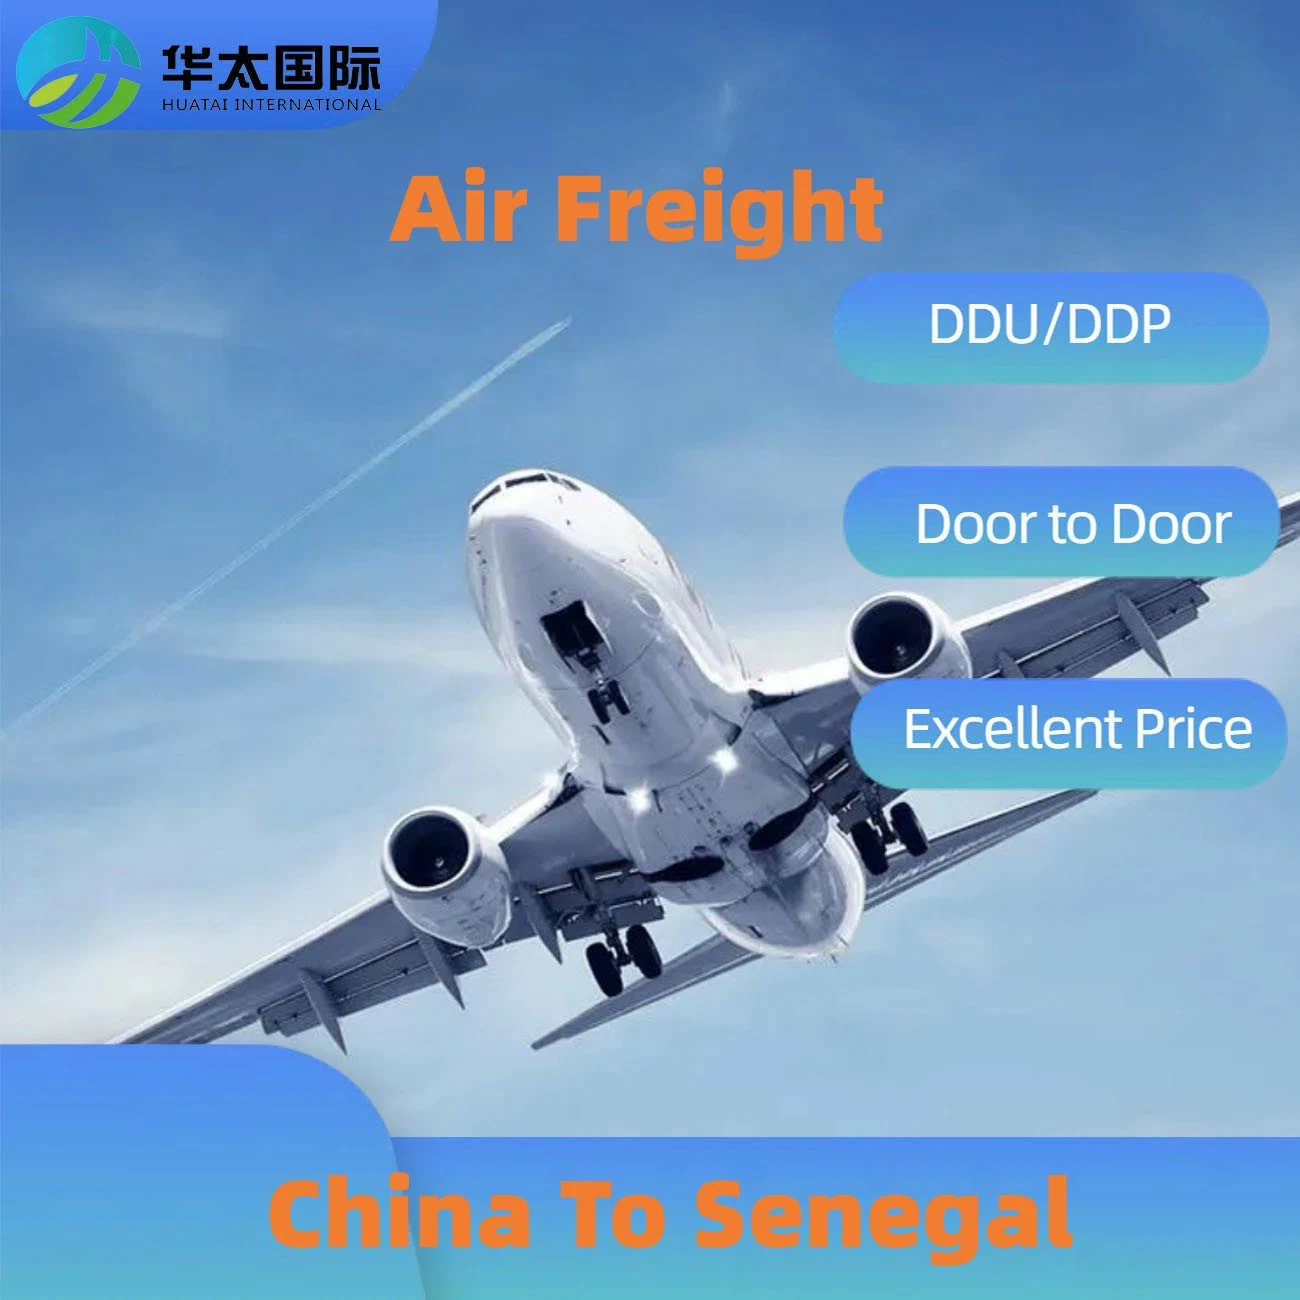 Agente de carga aérea cargo da China para o Senegal Logística Internacional Transporte de Despachante